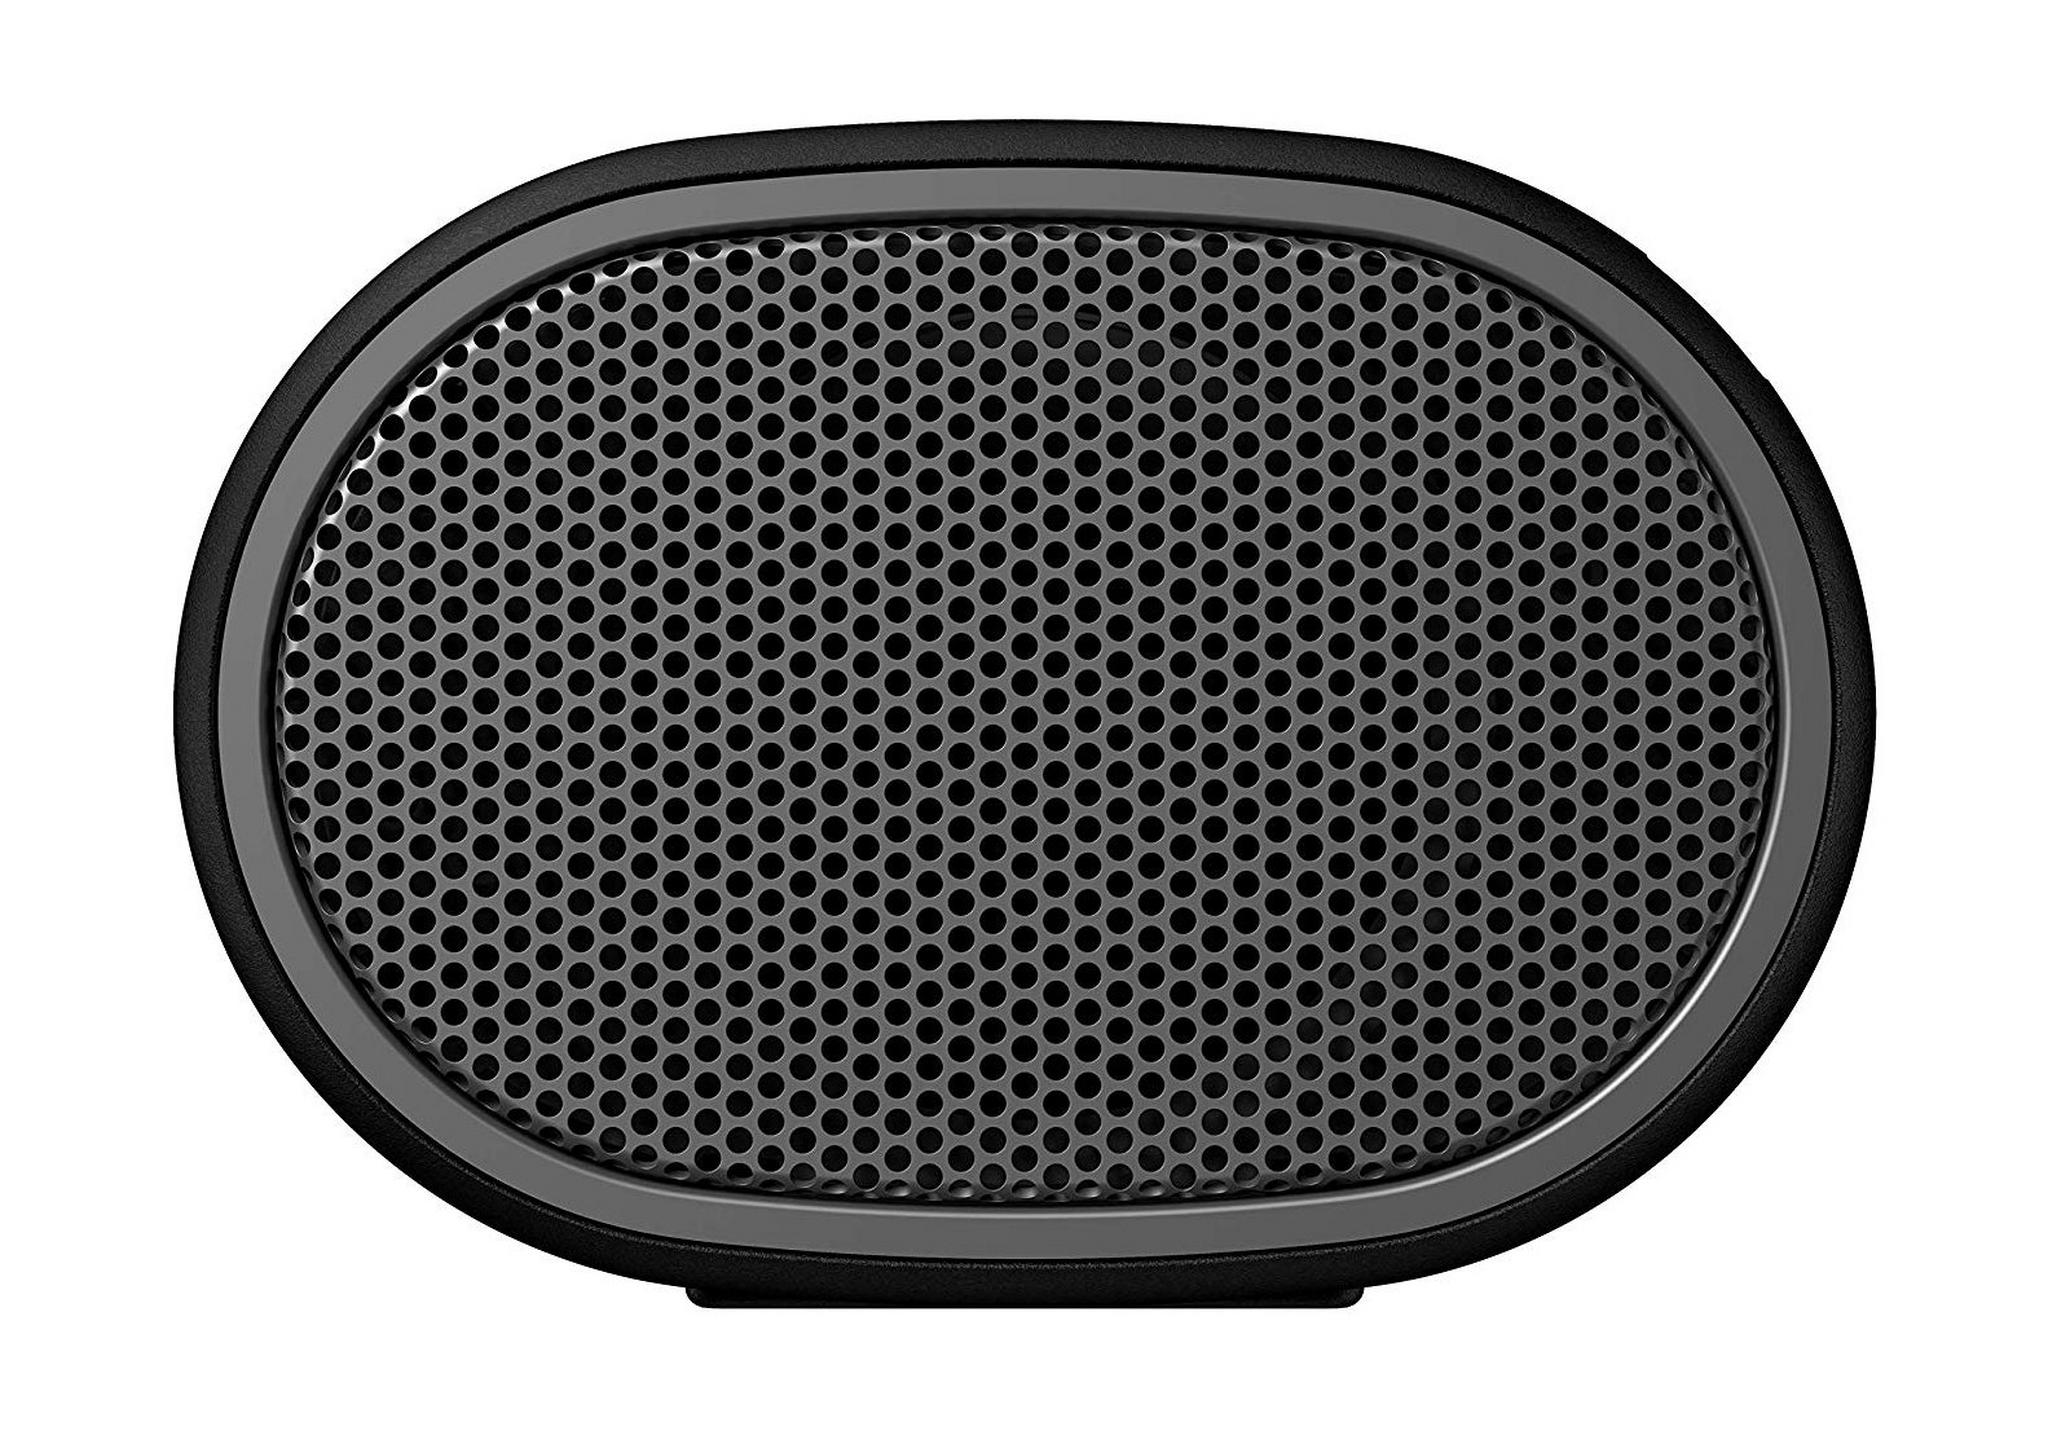 مكبر الصوت المدمج والمحمول XB01 بتقنية البلوتوث من سوني - أسود